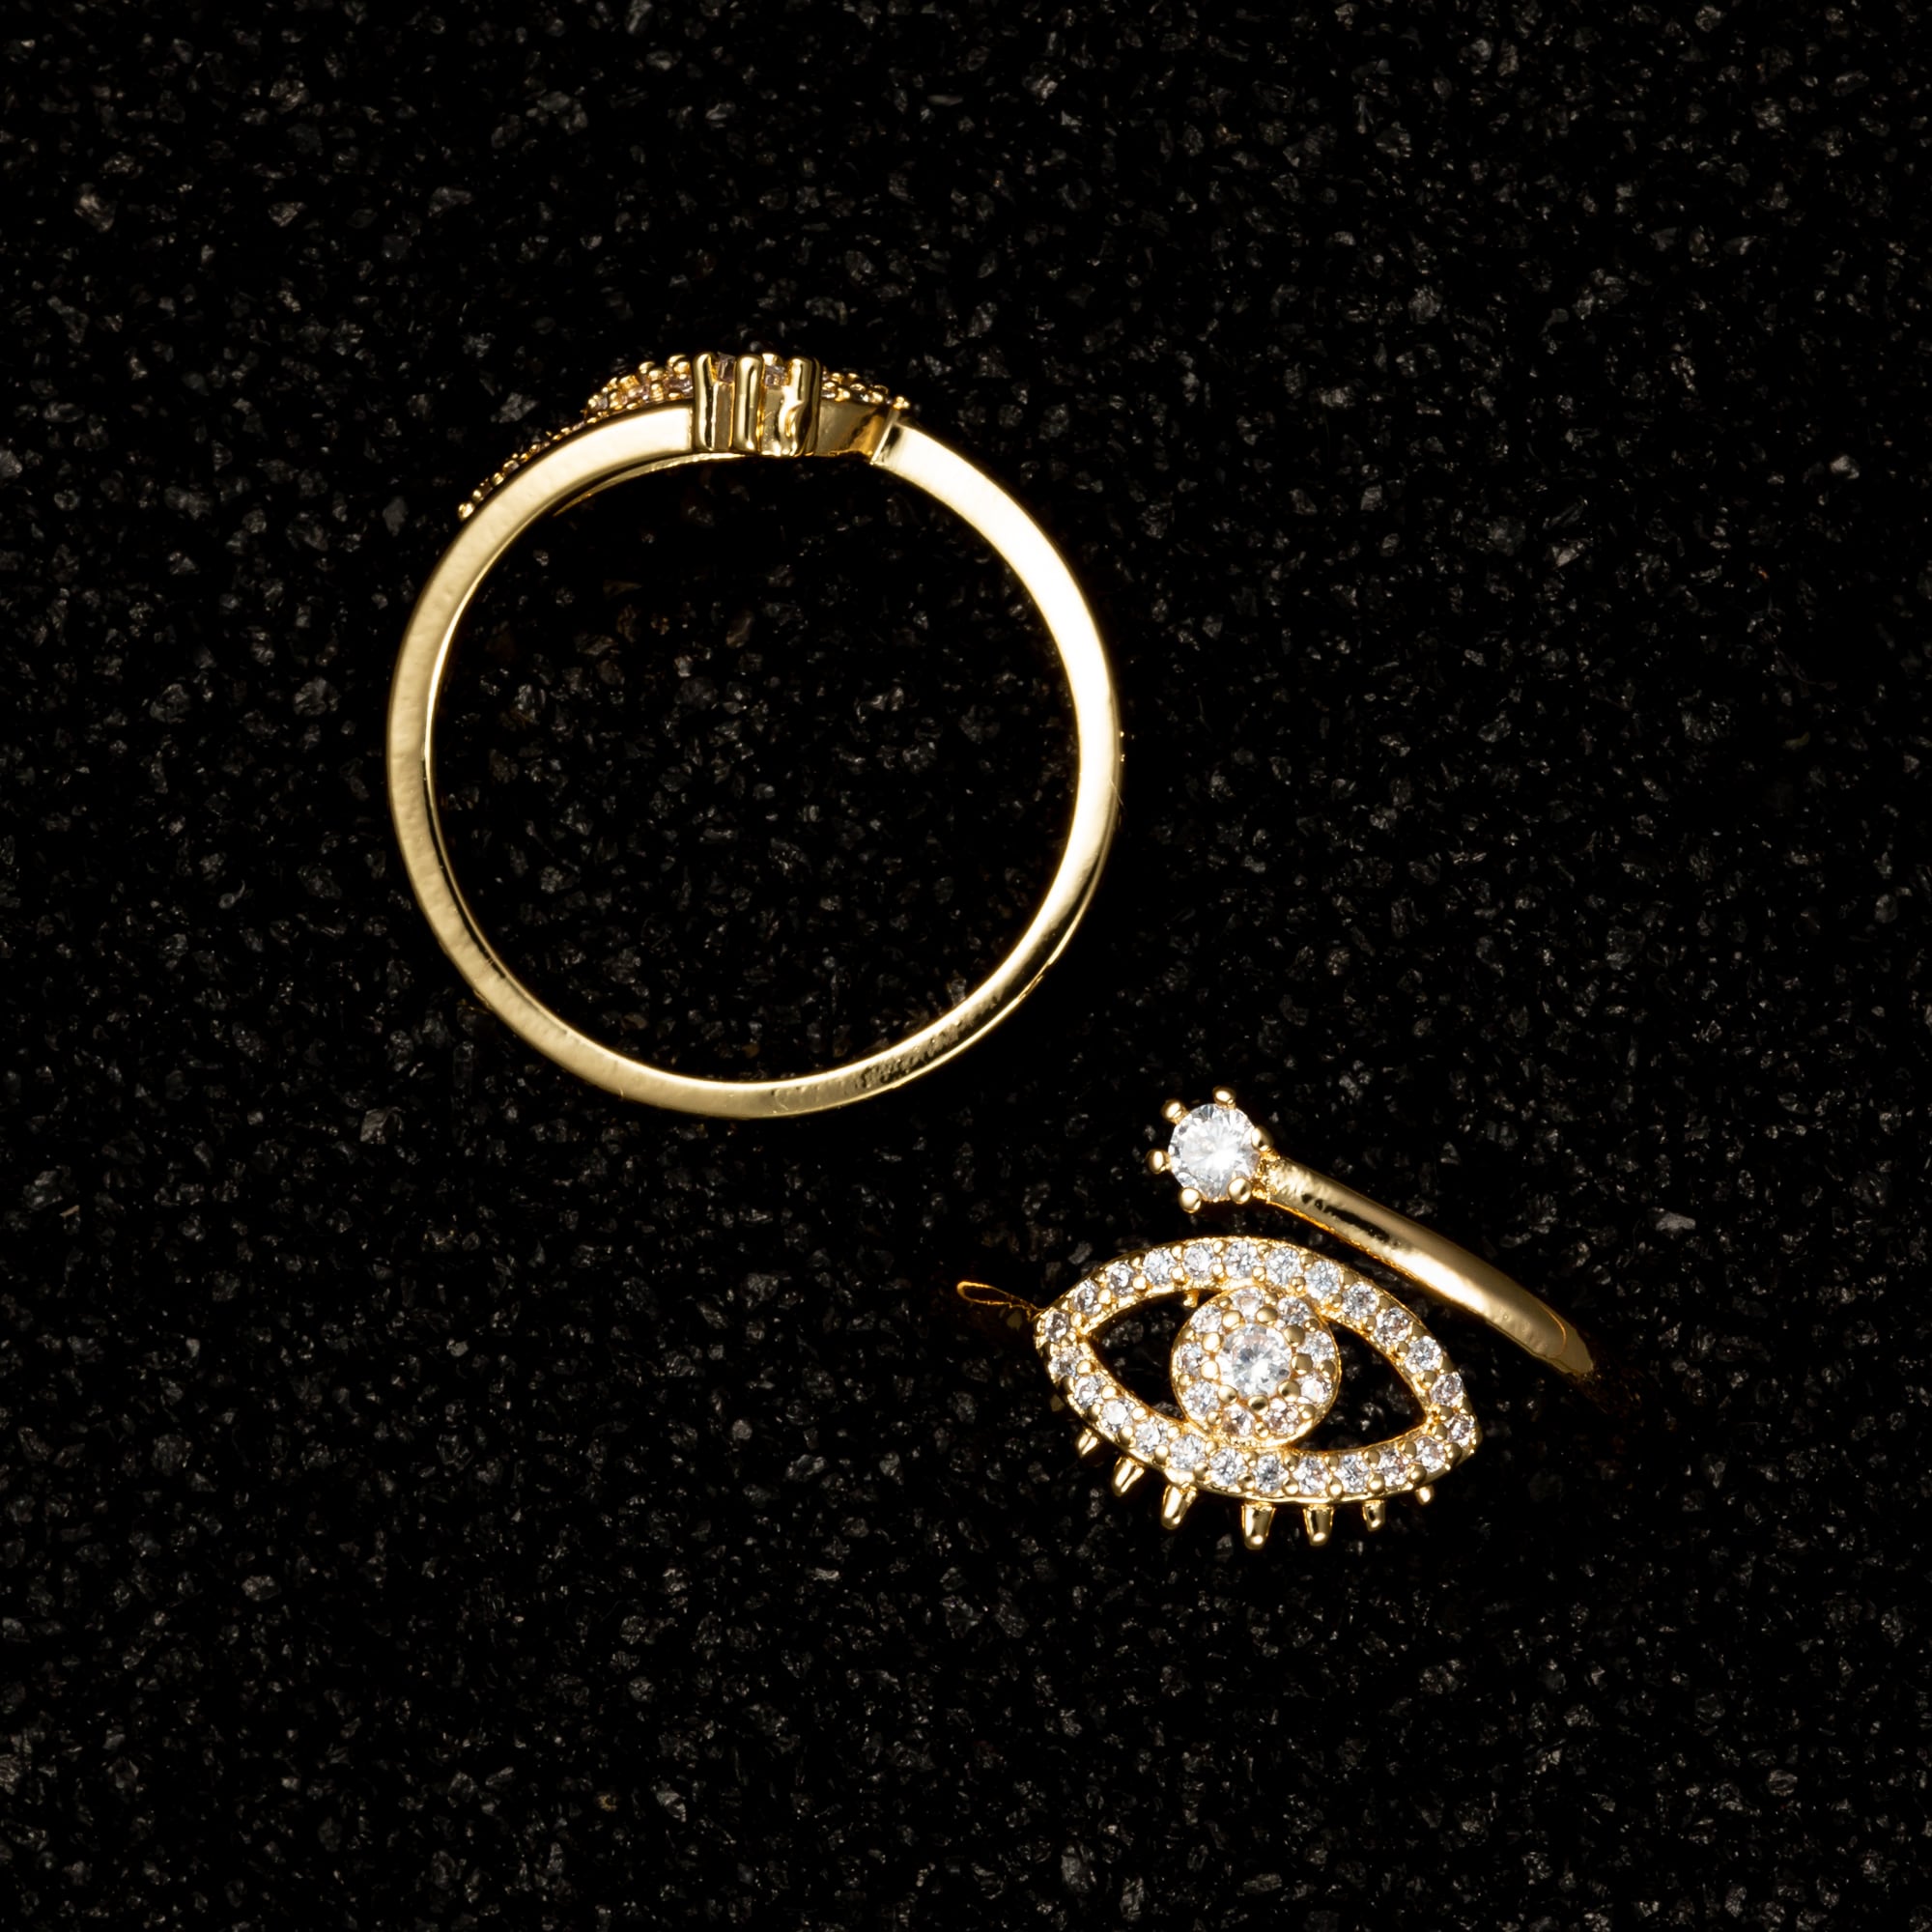 Wrap Evil Eye Adjustable Ring with Gemstones - Rings